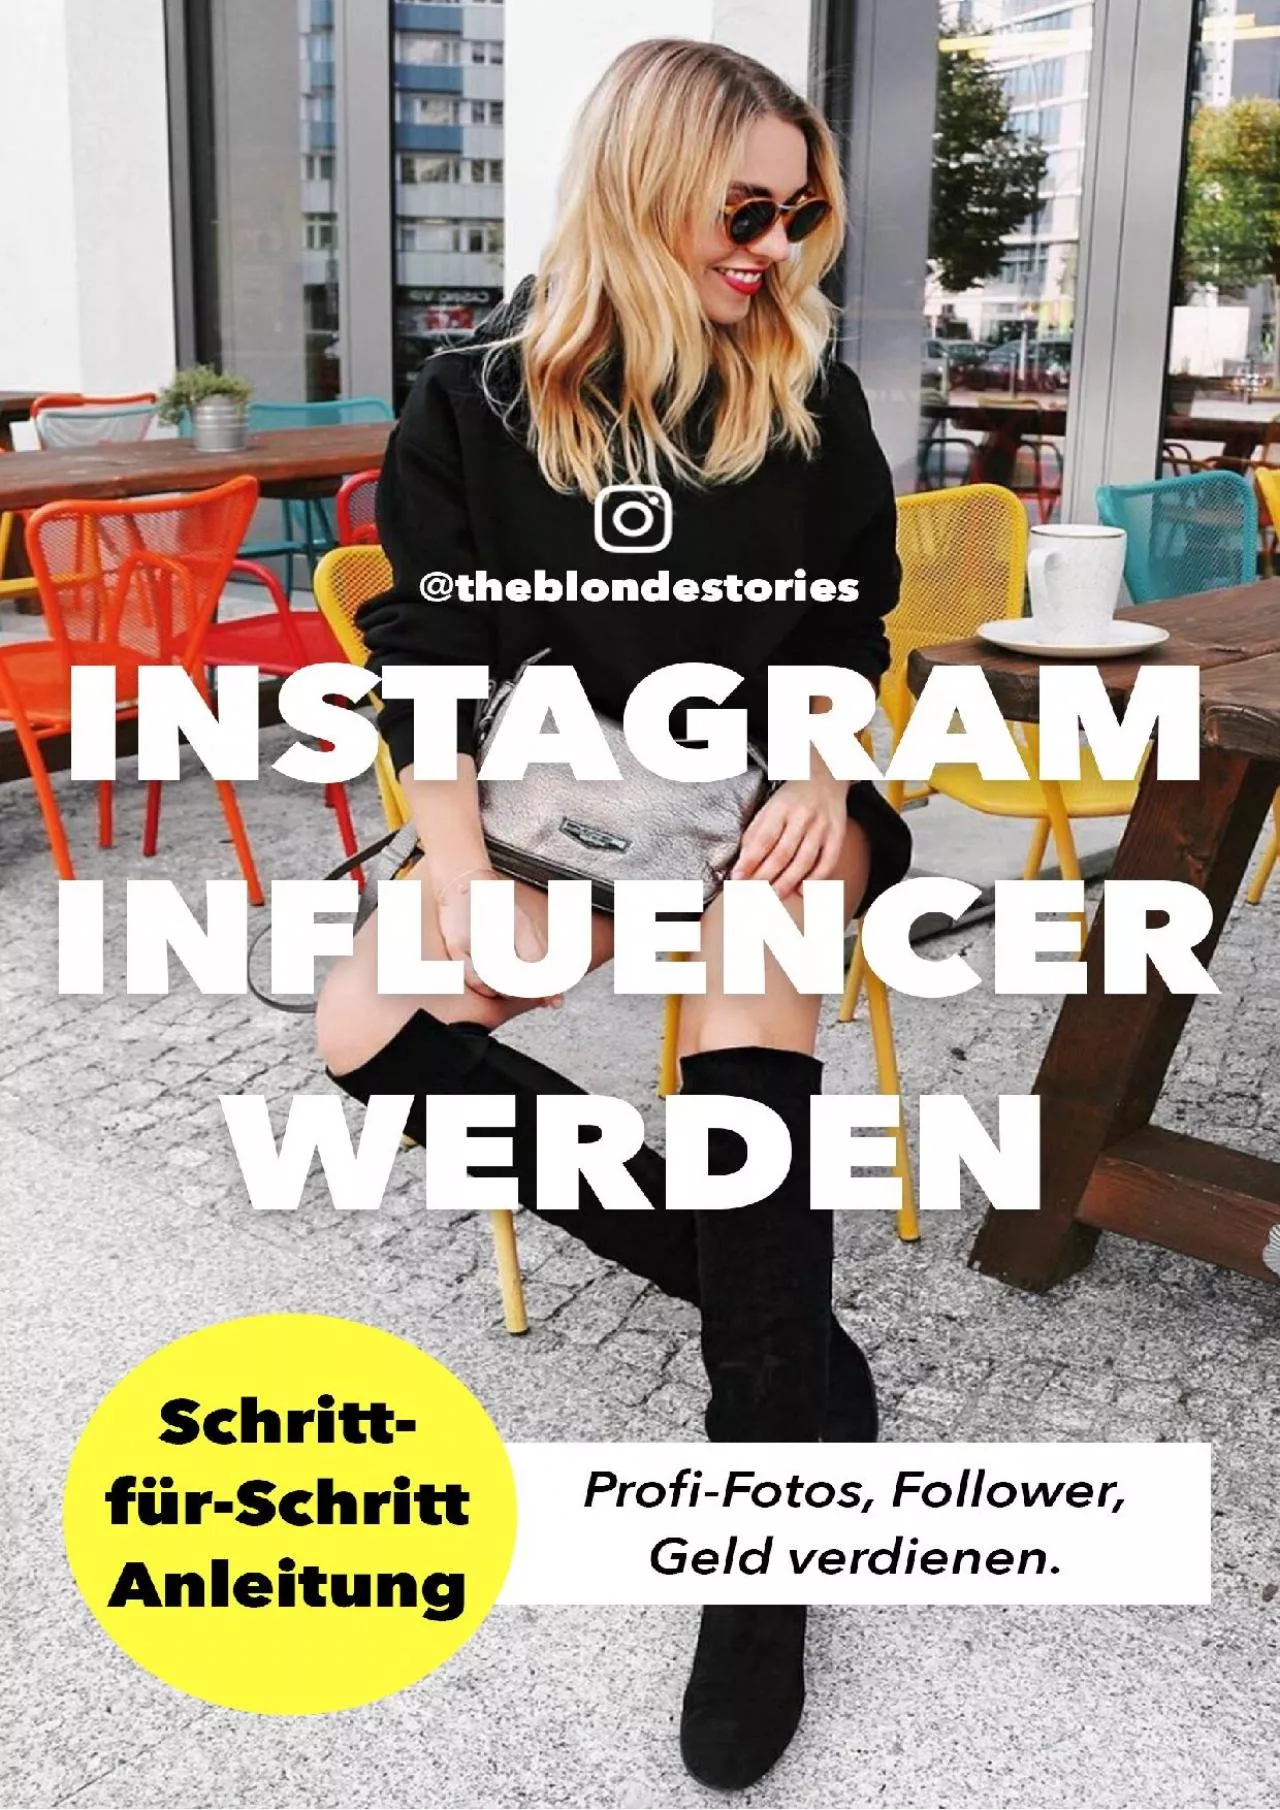 Instagram Influencer werden: Schritt-für-Schritt Anleitung von Influencerin theblondestories.